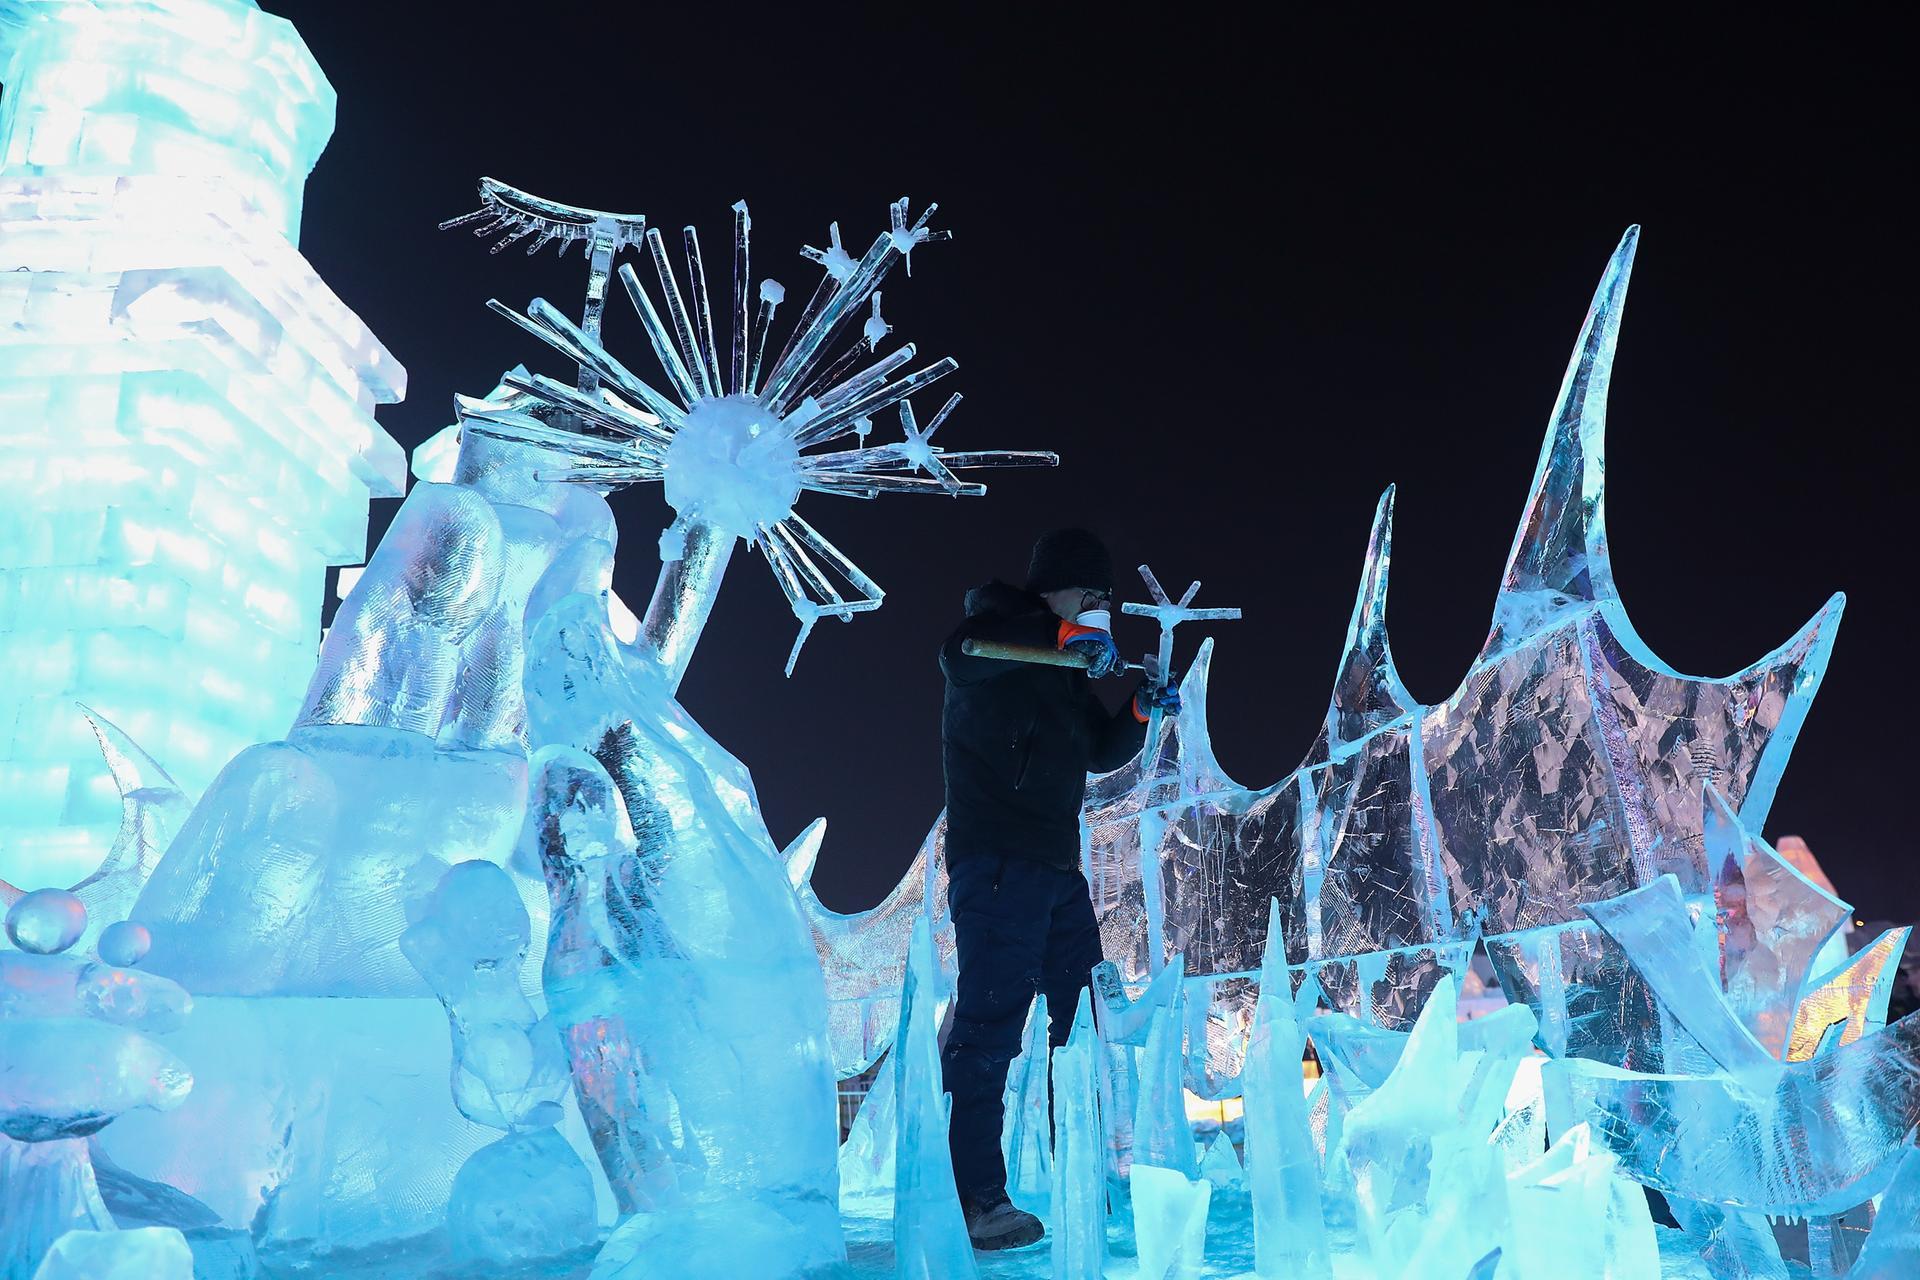 Ледовый праздник. Харбин фестиваль льда и снега 2020. Ольхон фестиваль ледяных скульптур. Харбинский фестиваль ресторан изо льда. Ледяные скульптуры на Ольхоне.